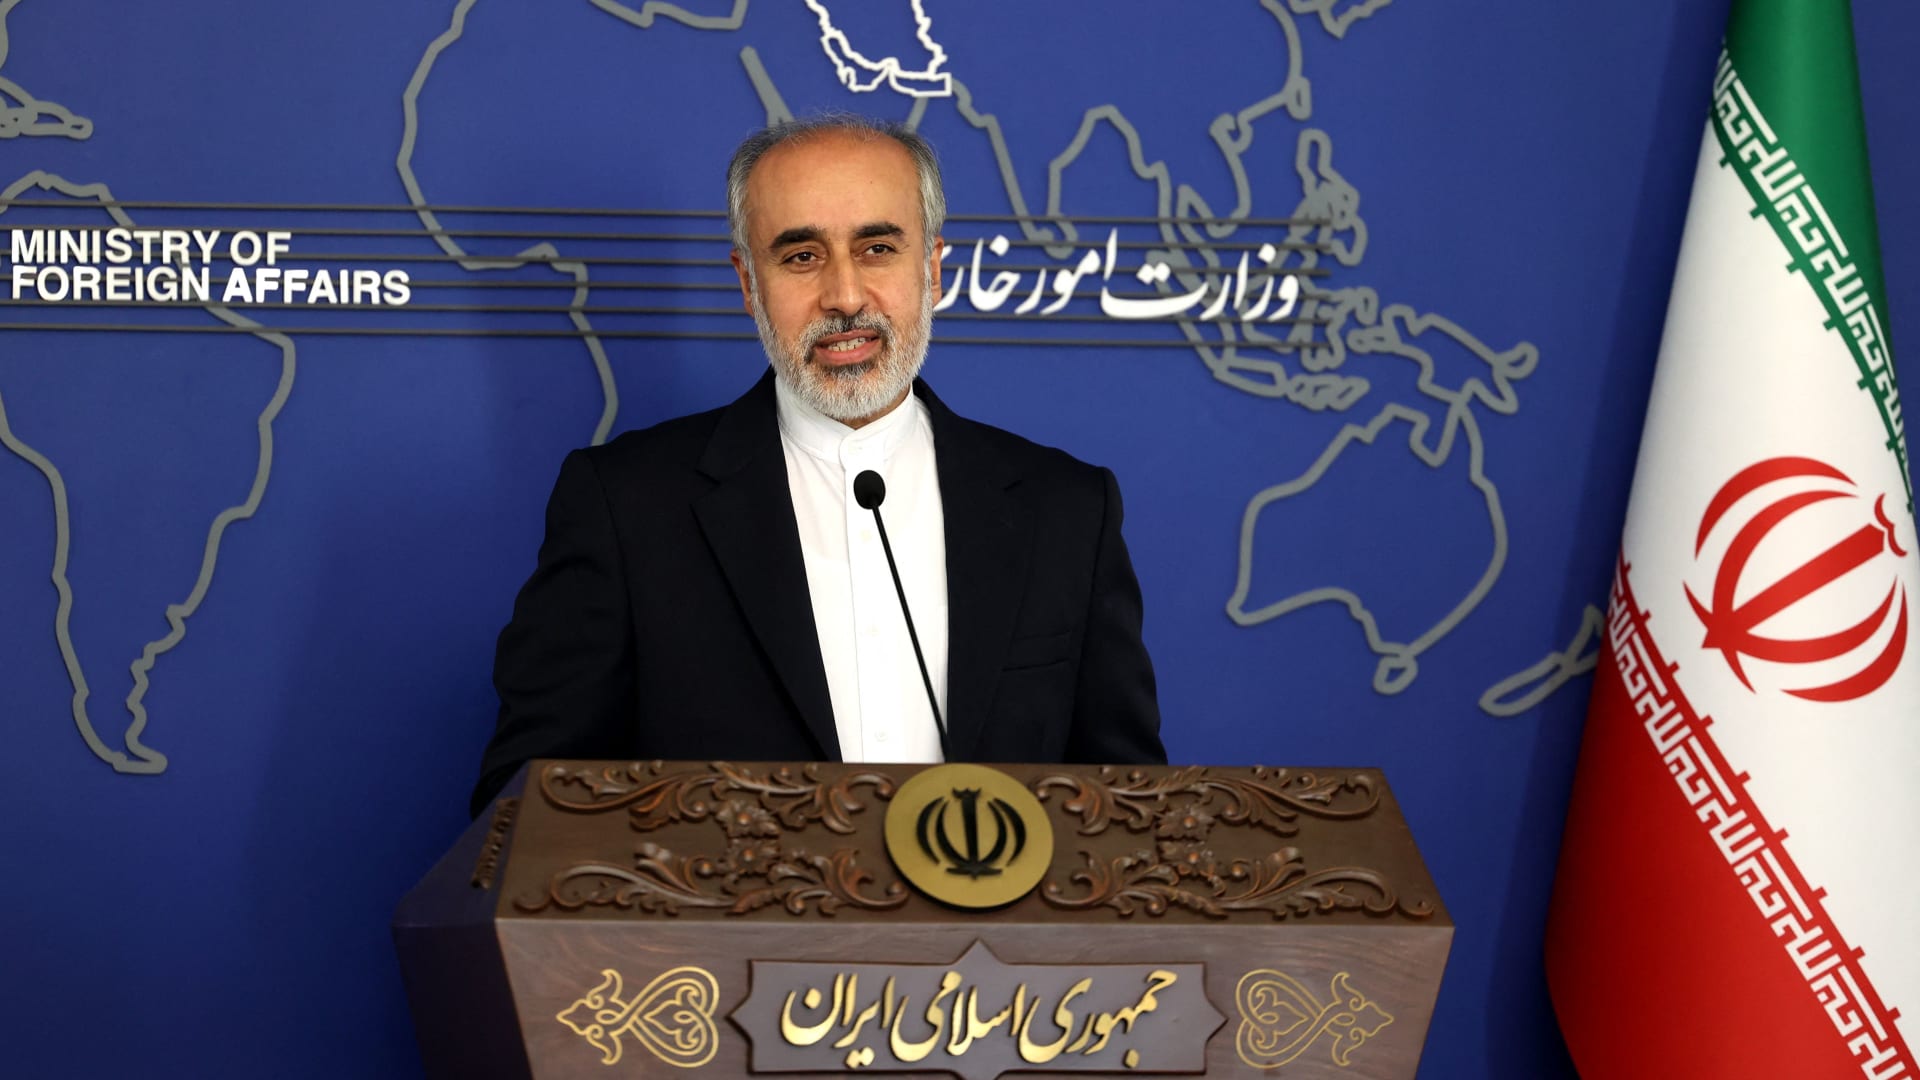  المتحدث باسم وزارة الخارجية الإيرانية ناصر كنعاني